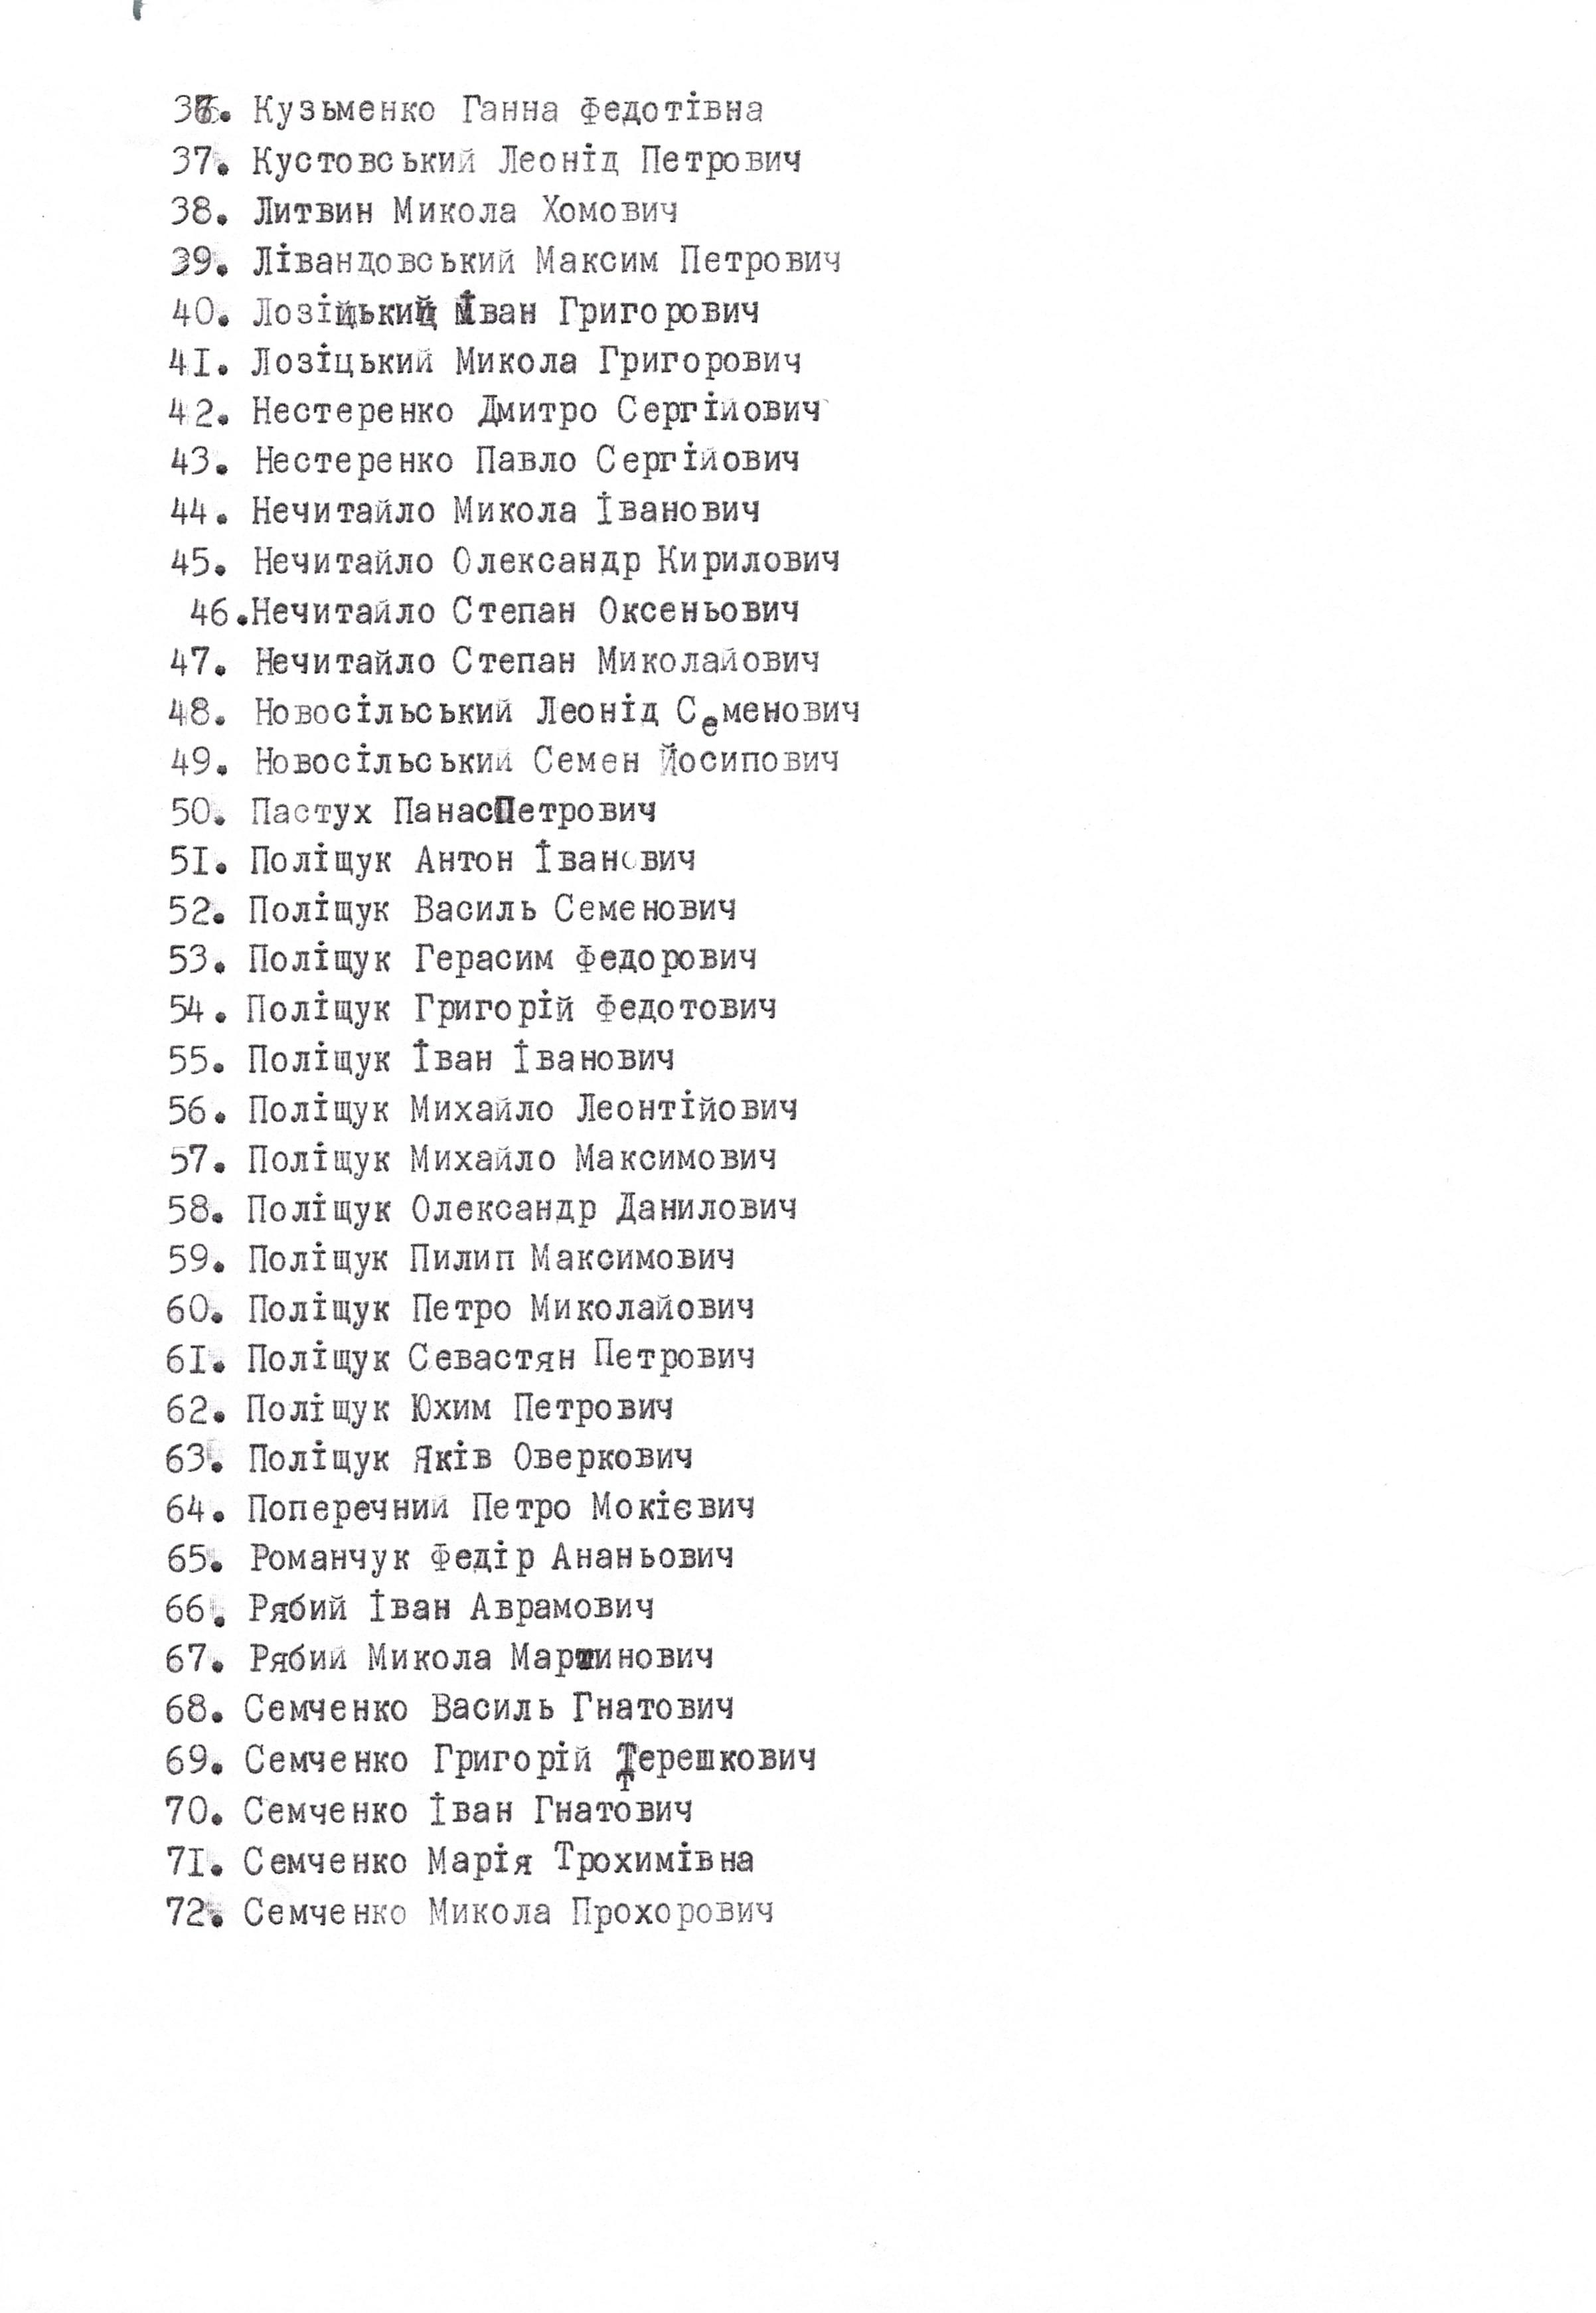 Список погибших граждан с. Салиха в 1941-1945 гг.